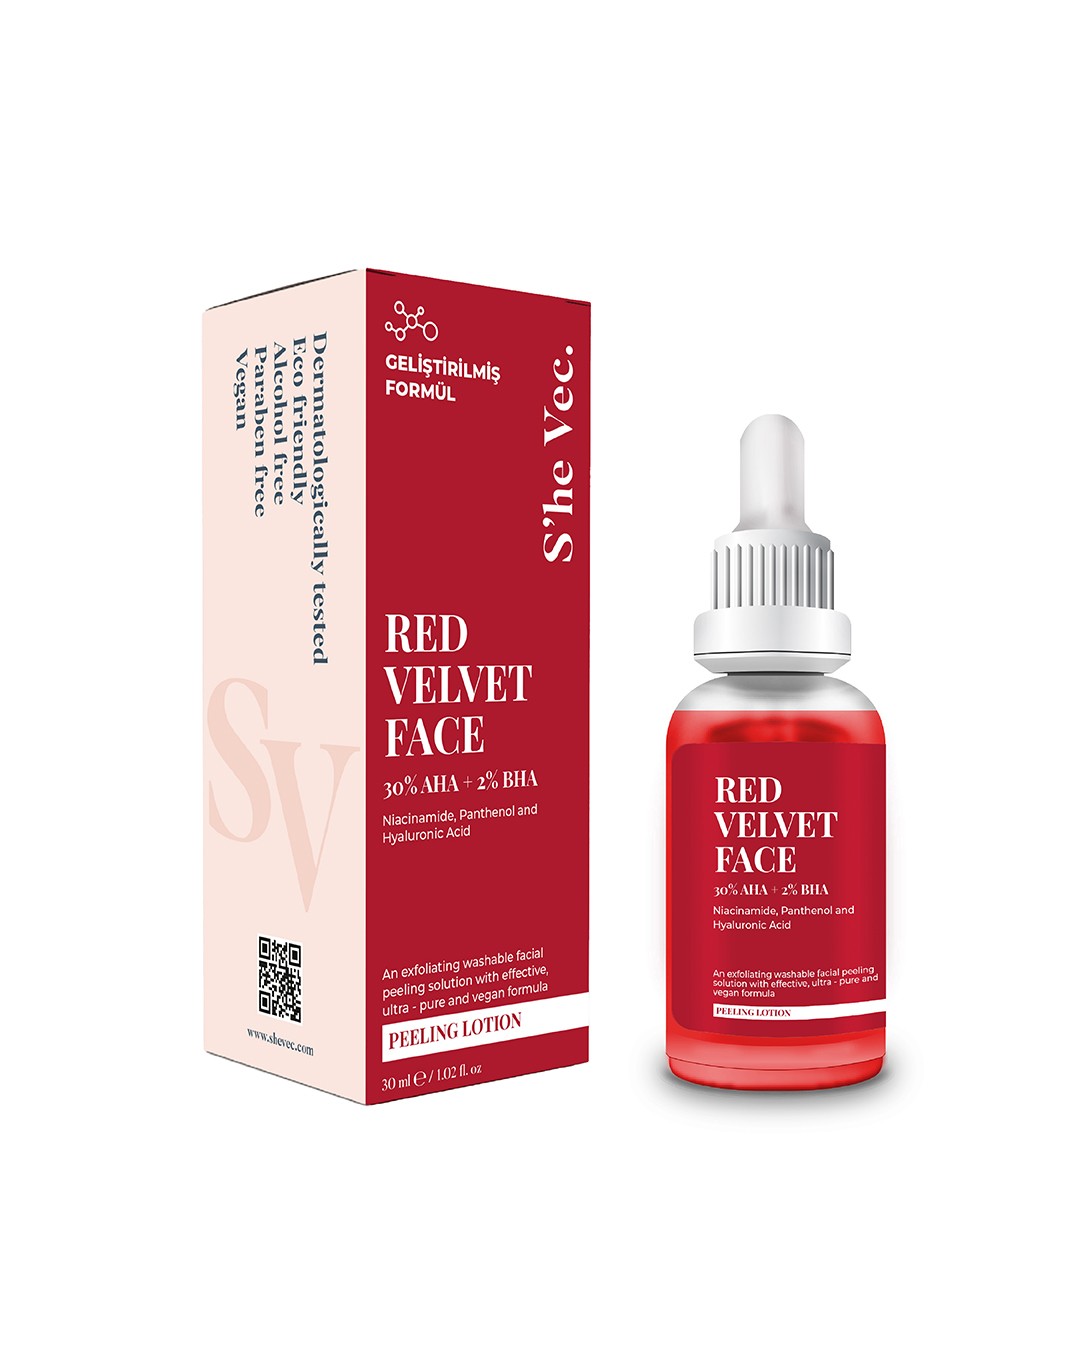 RED VELVET FACE - AHA %30 & BHA %2 Arındırıcı Cilt Tonu Eşitleyici Kırmızı Peeling Serum (30 ml)